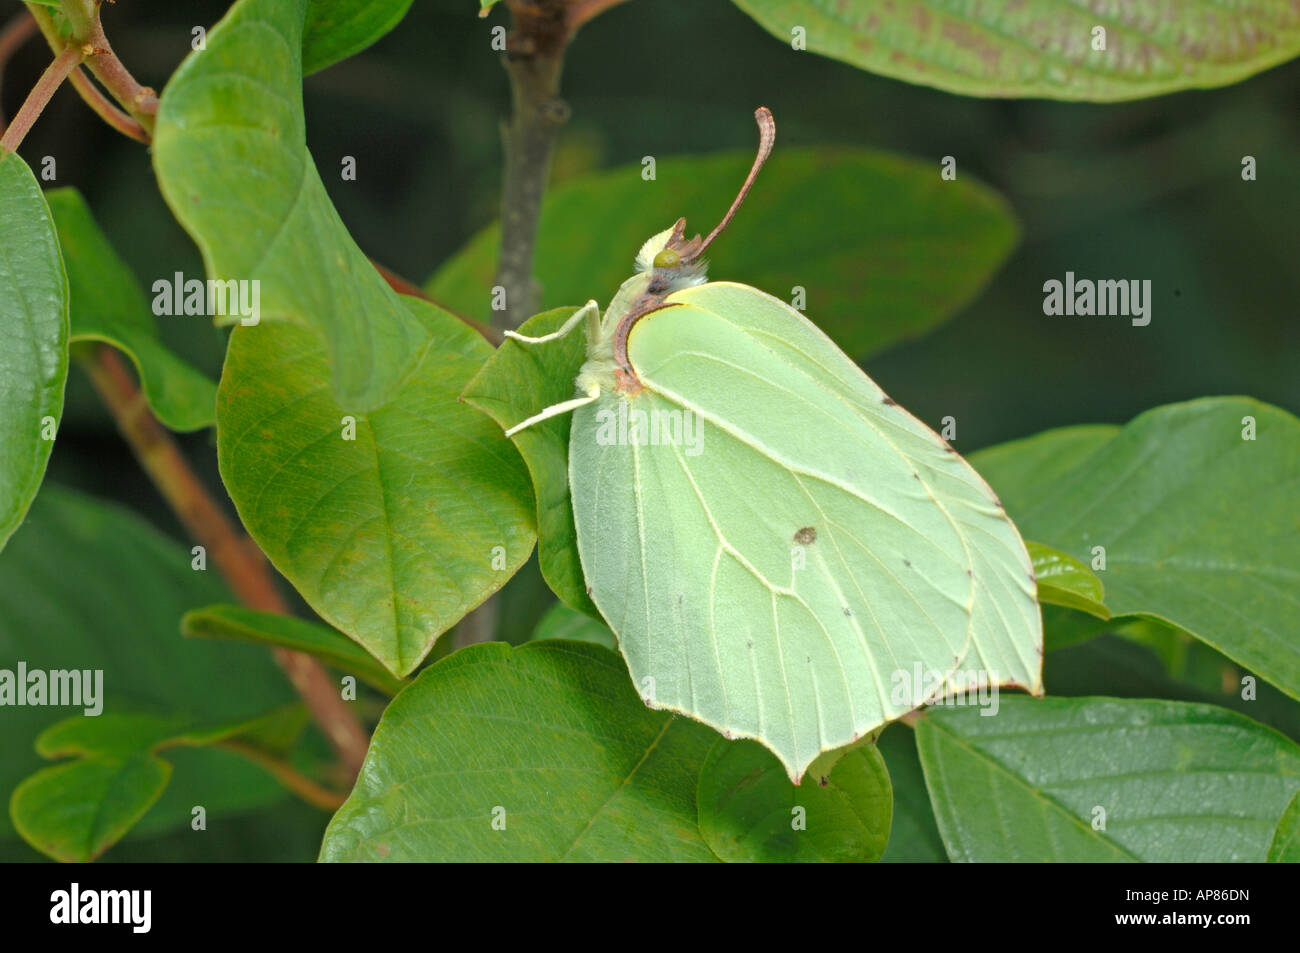 Brimstone Butterfly (Gonepteryx rhamni), female on leaf Stock Photo